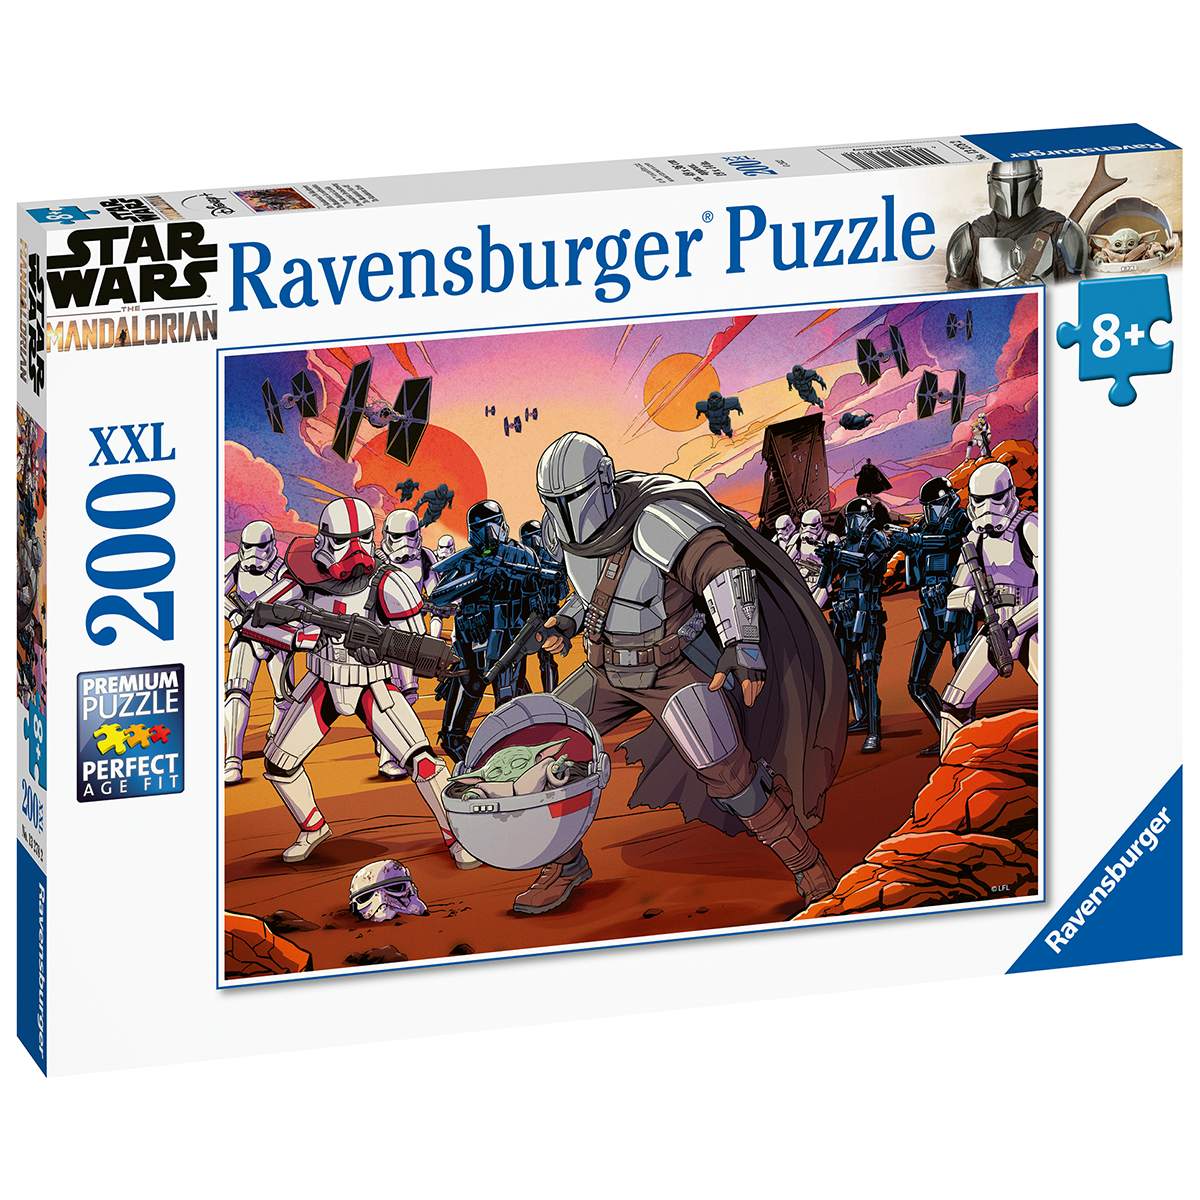 Ravensburger puzzle da 200 pezzi  - per bambini a partire da 8 anni – mandalorian - star wars - dimensione 49x36 centimetri - RAVENSBURGER, Star Wars